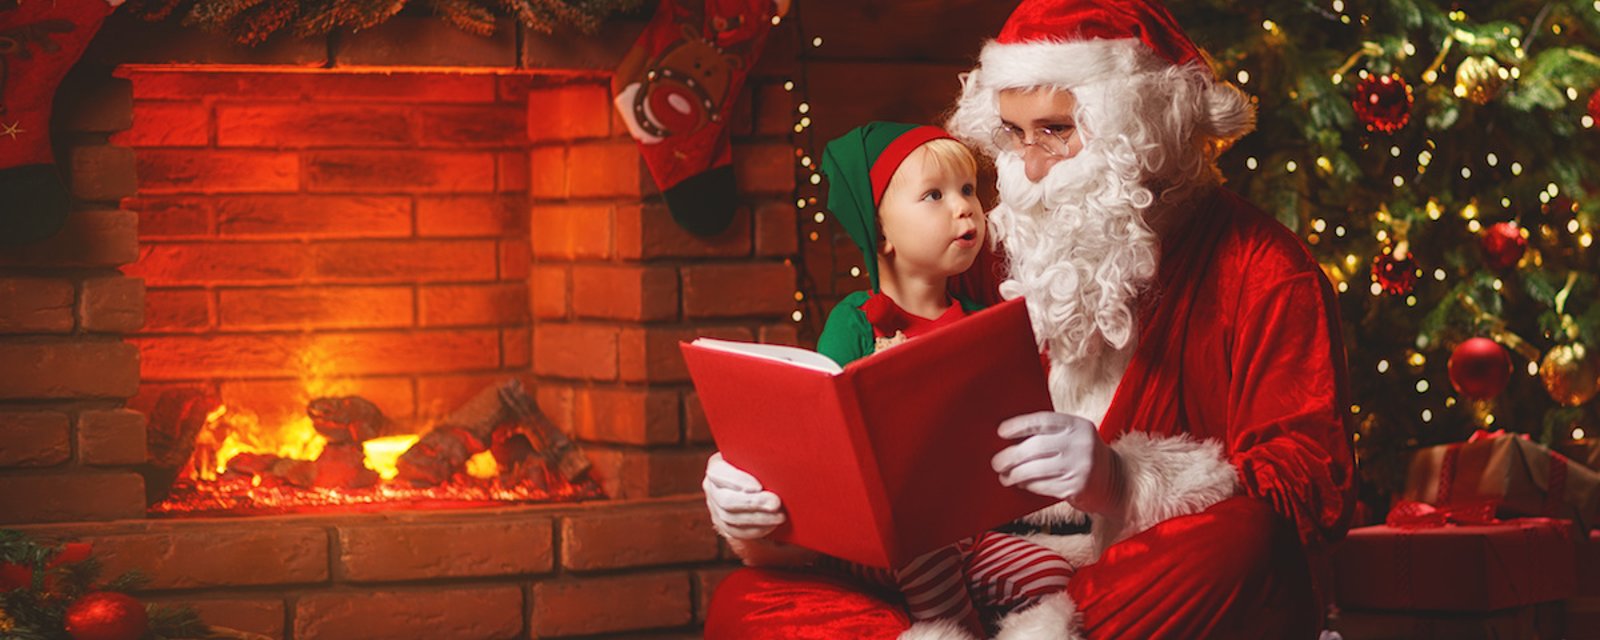 Père Noël: mentir aux enfants à son sujets pourrait être néfaste, selon certains experts